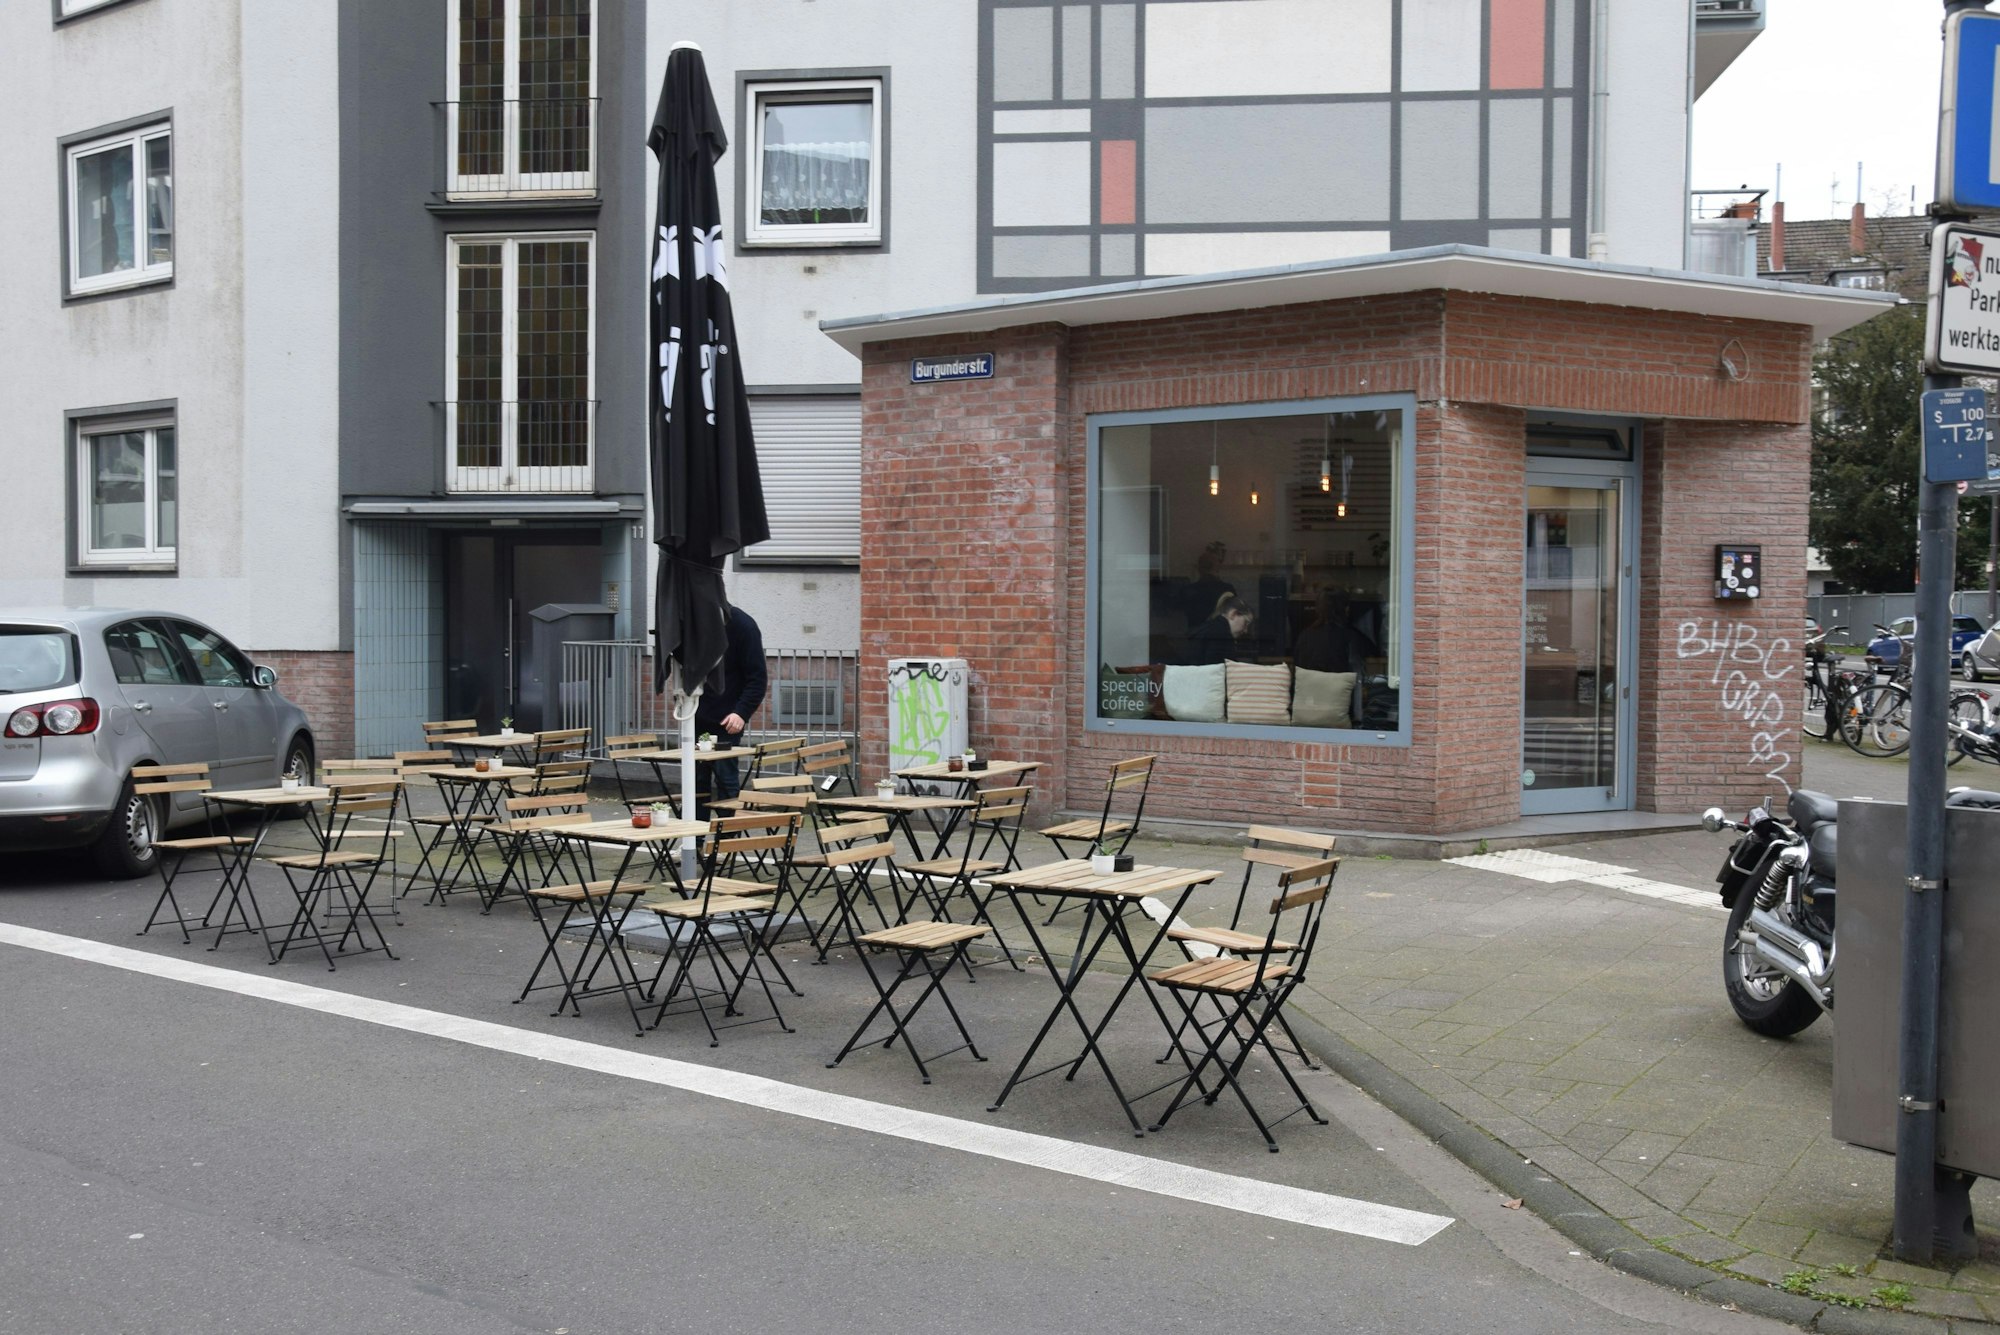 Auf einem Parkplatz stehen Tische, die zu einem dahinterliegenden Café in einem schlichten Eckhaus gehören.